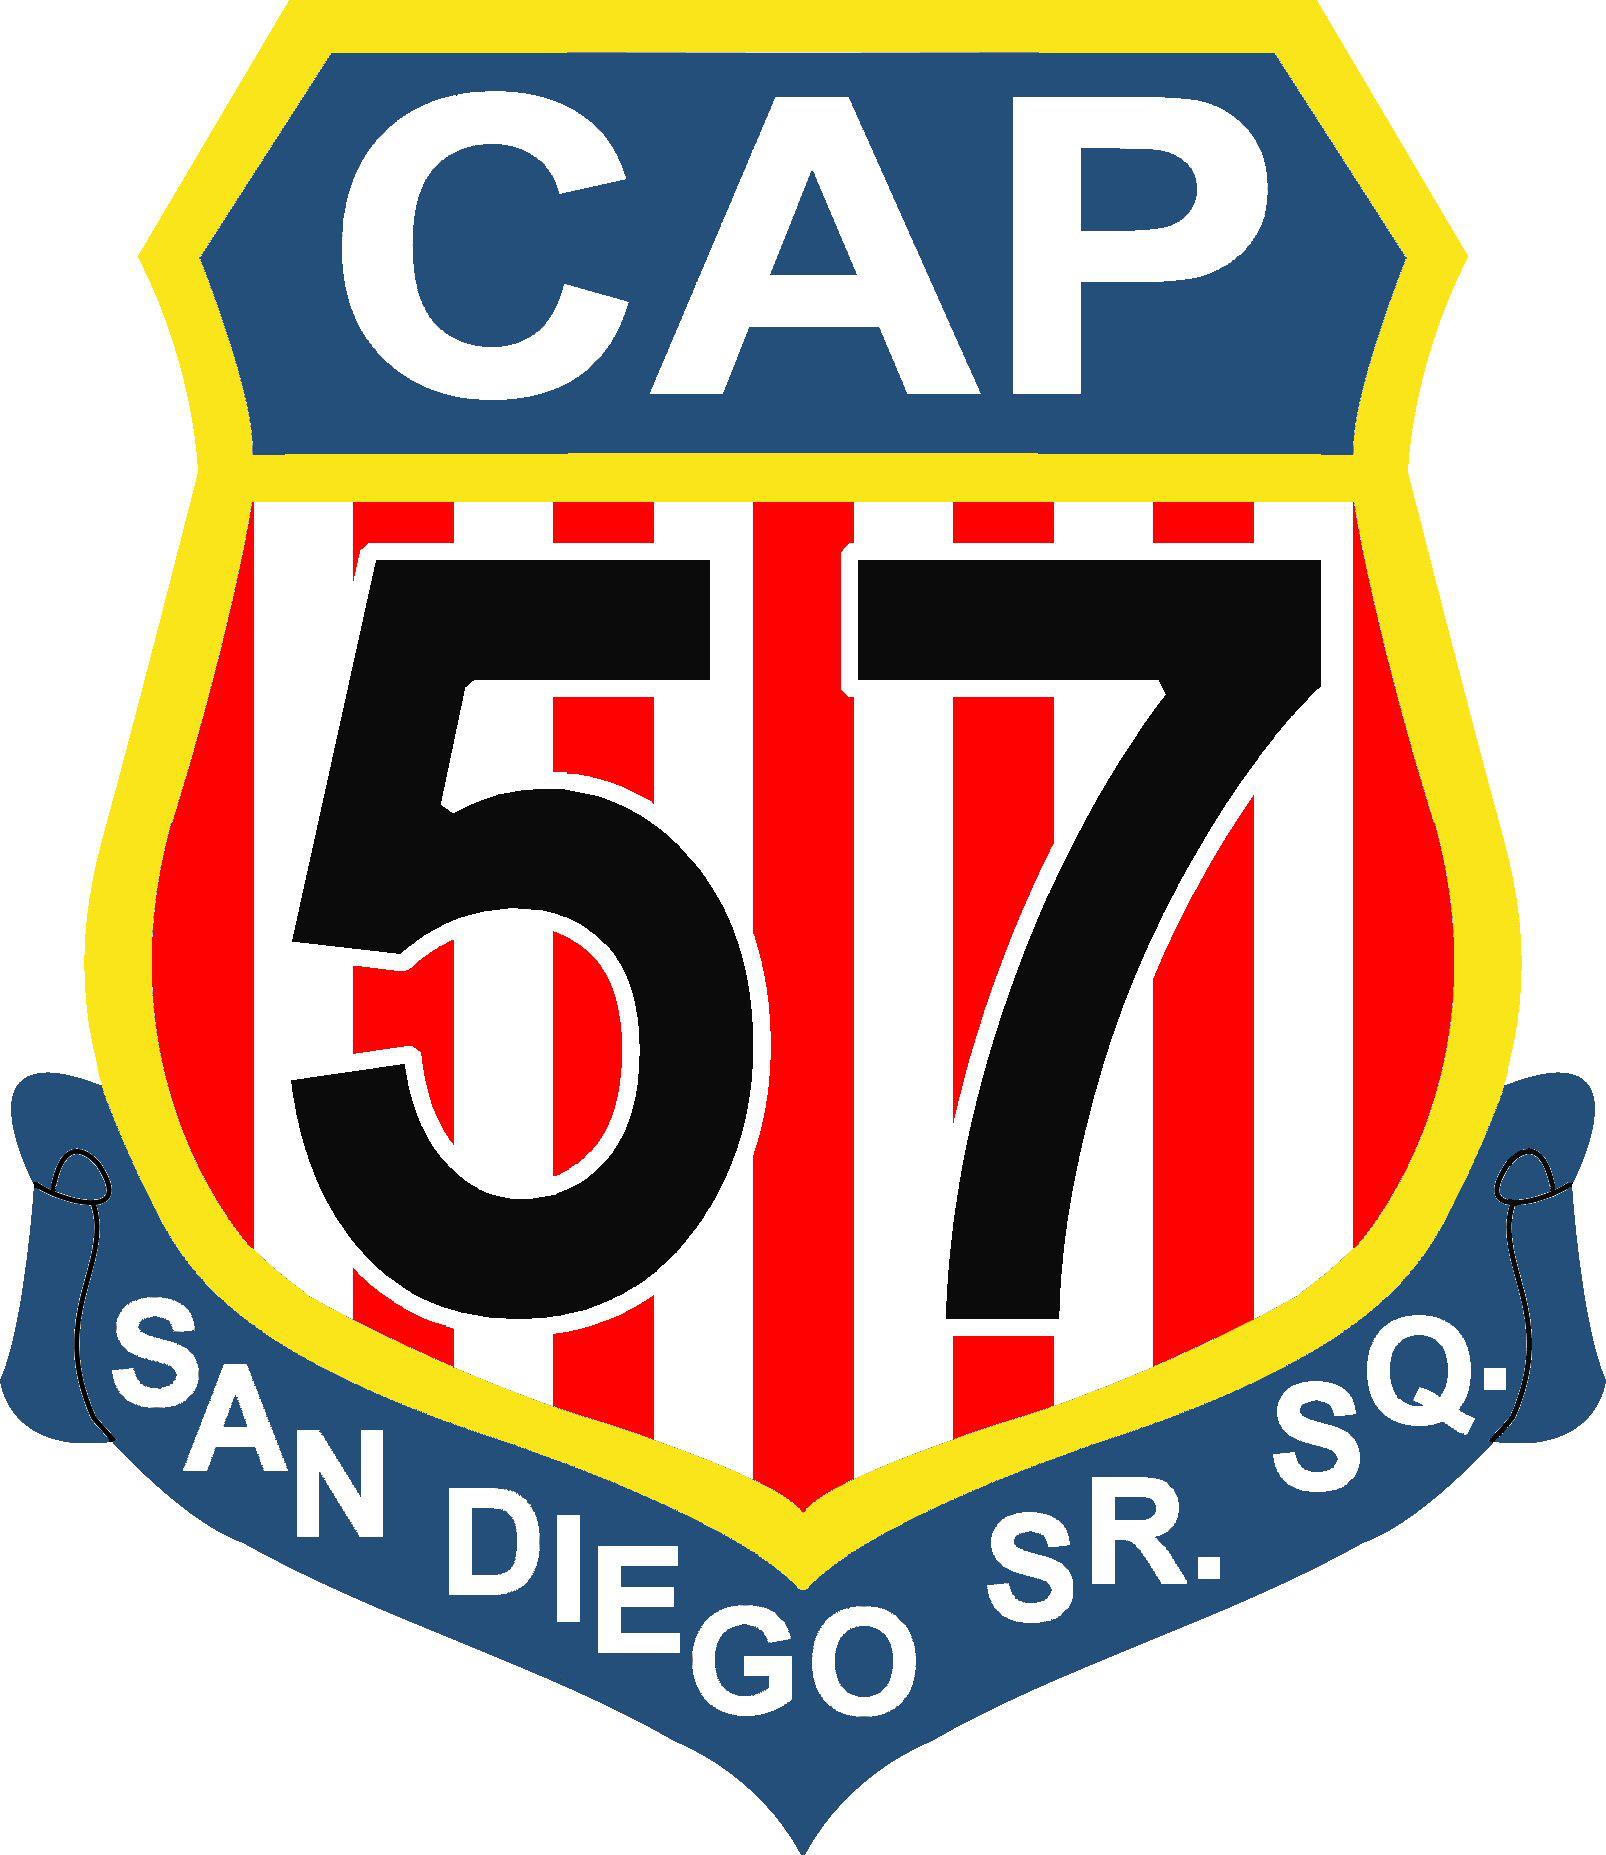 San Diego Senior Squadron 57